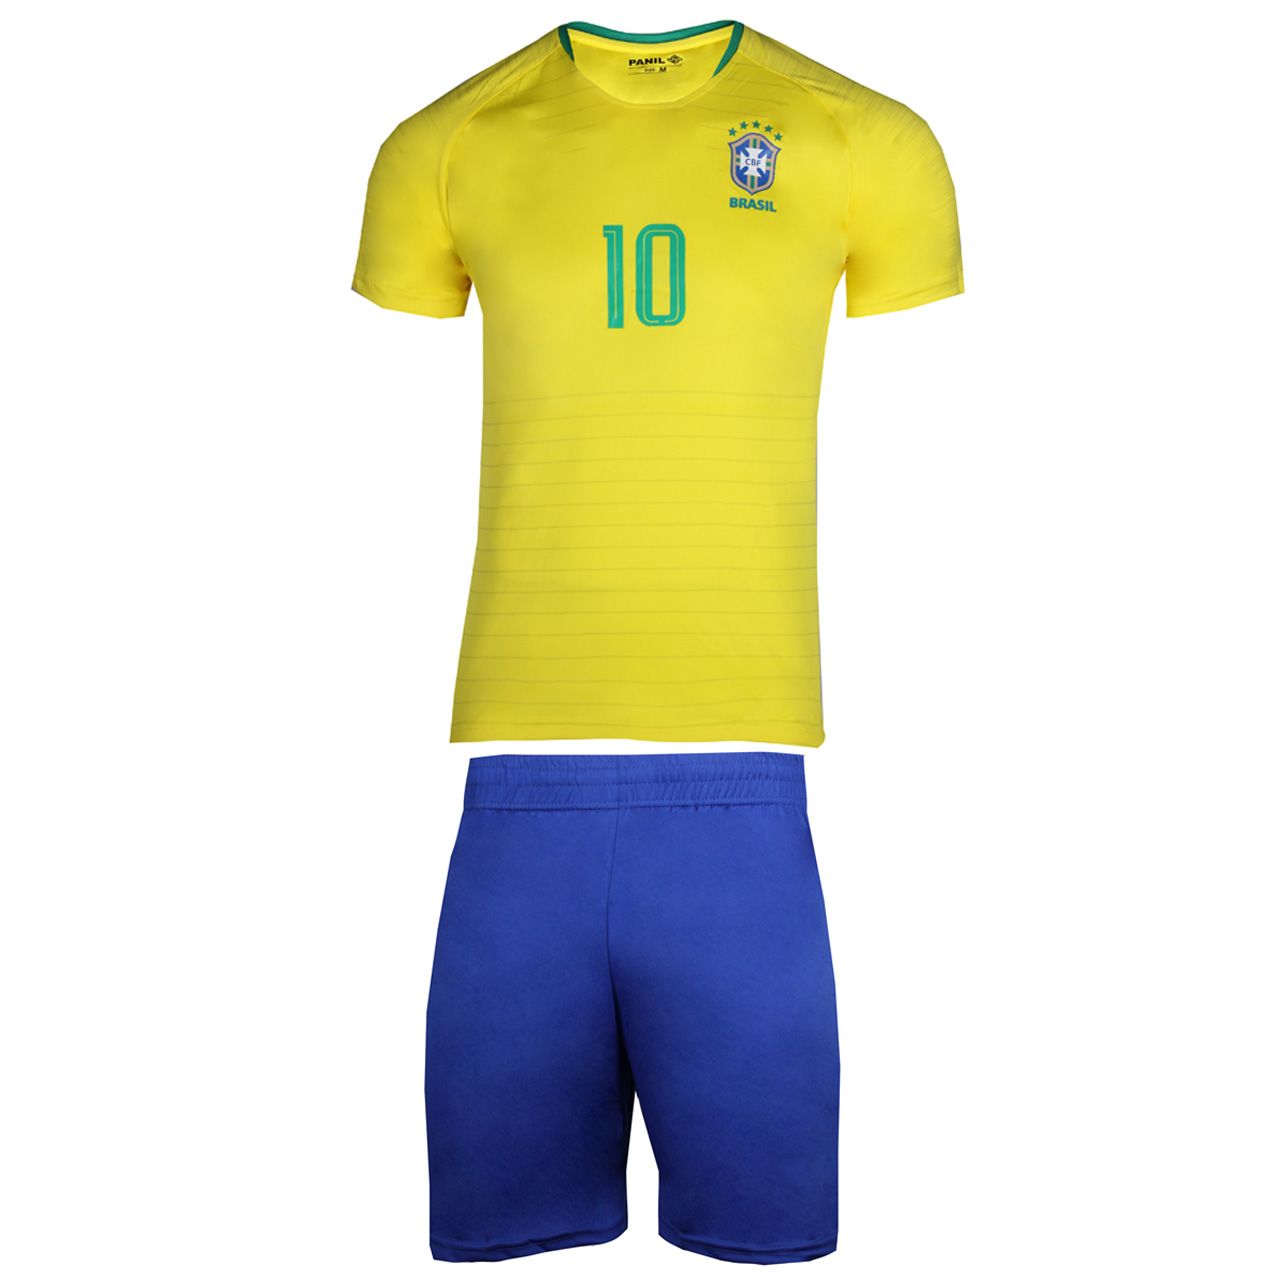 پیراهن و شورت ورزشی پانیل طرح تیم برزیل کد 3013 -  - 1